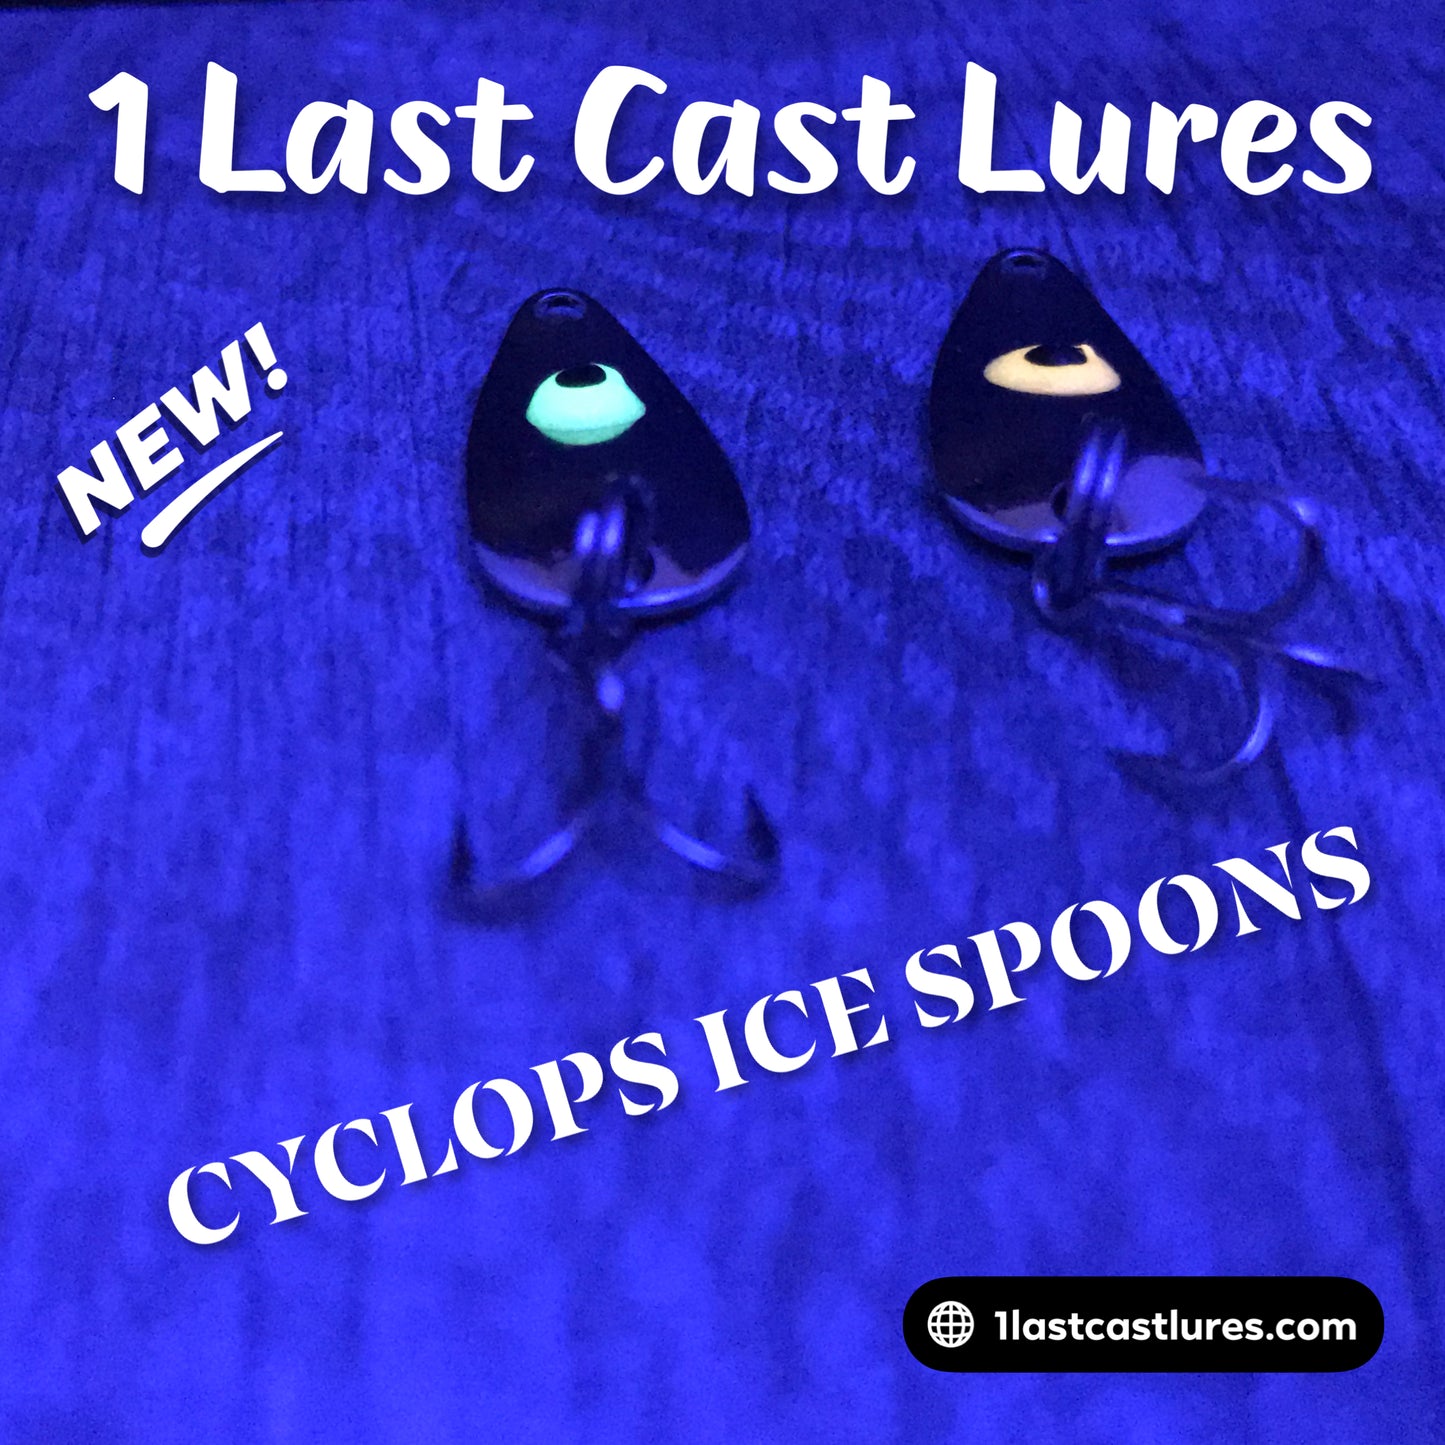 Cyclops Spoons